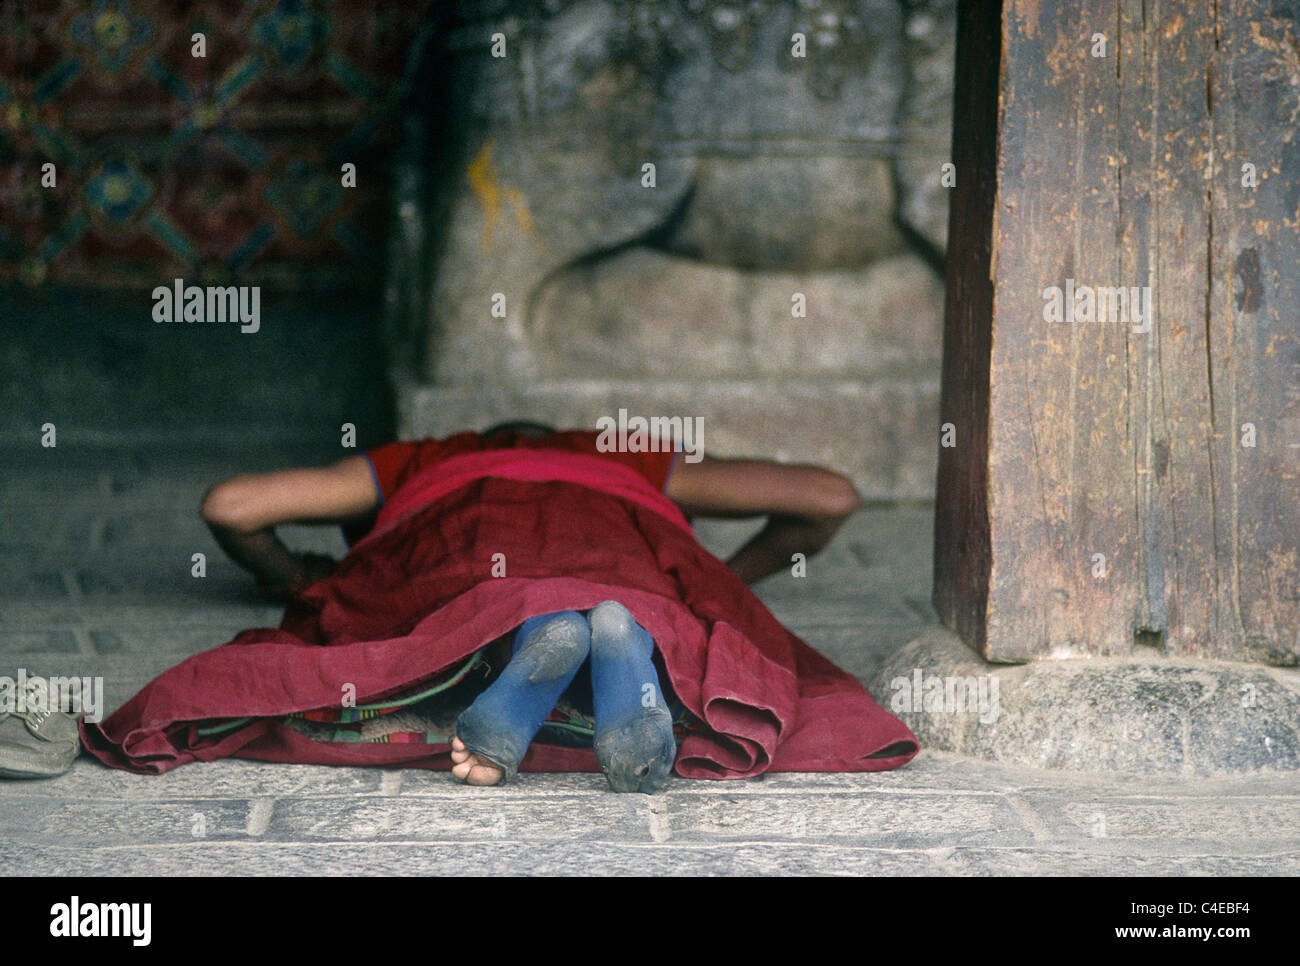 Moine tibétain se prosternait à l'entrée de l'Utse, monastère de Samye. Tibet Chine Banque D'Images